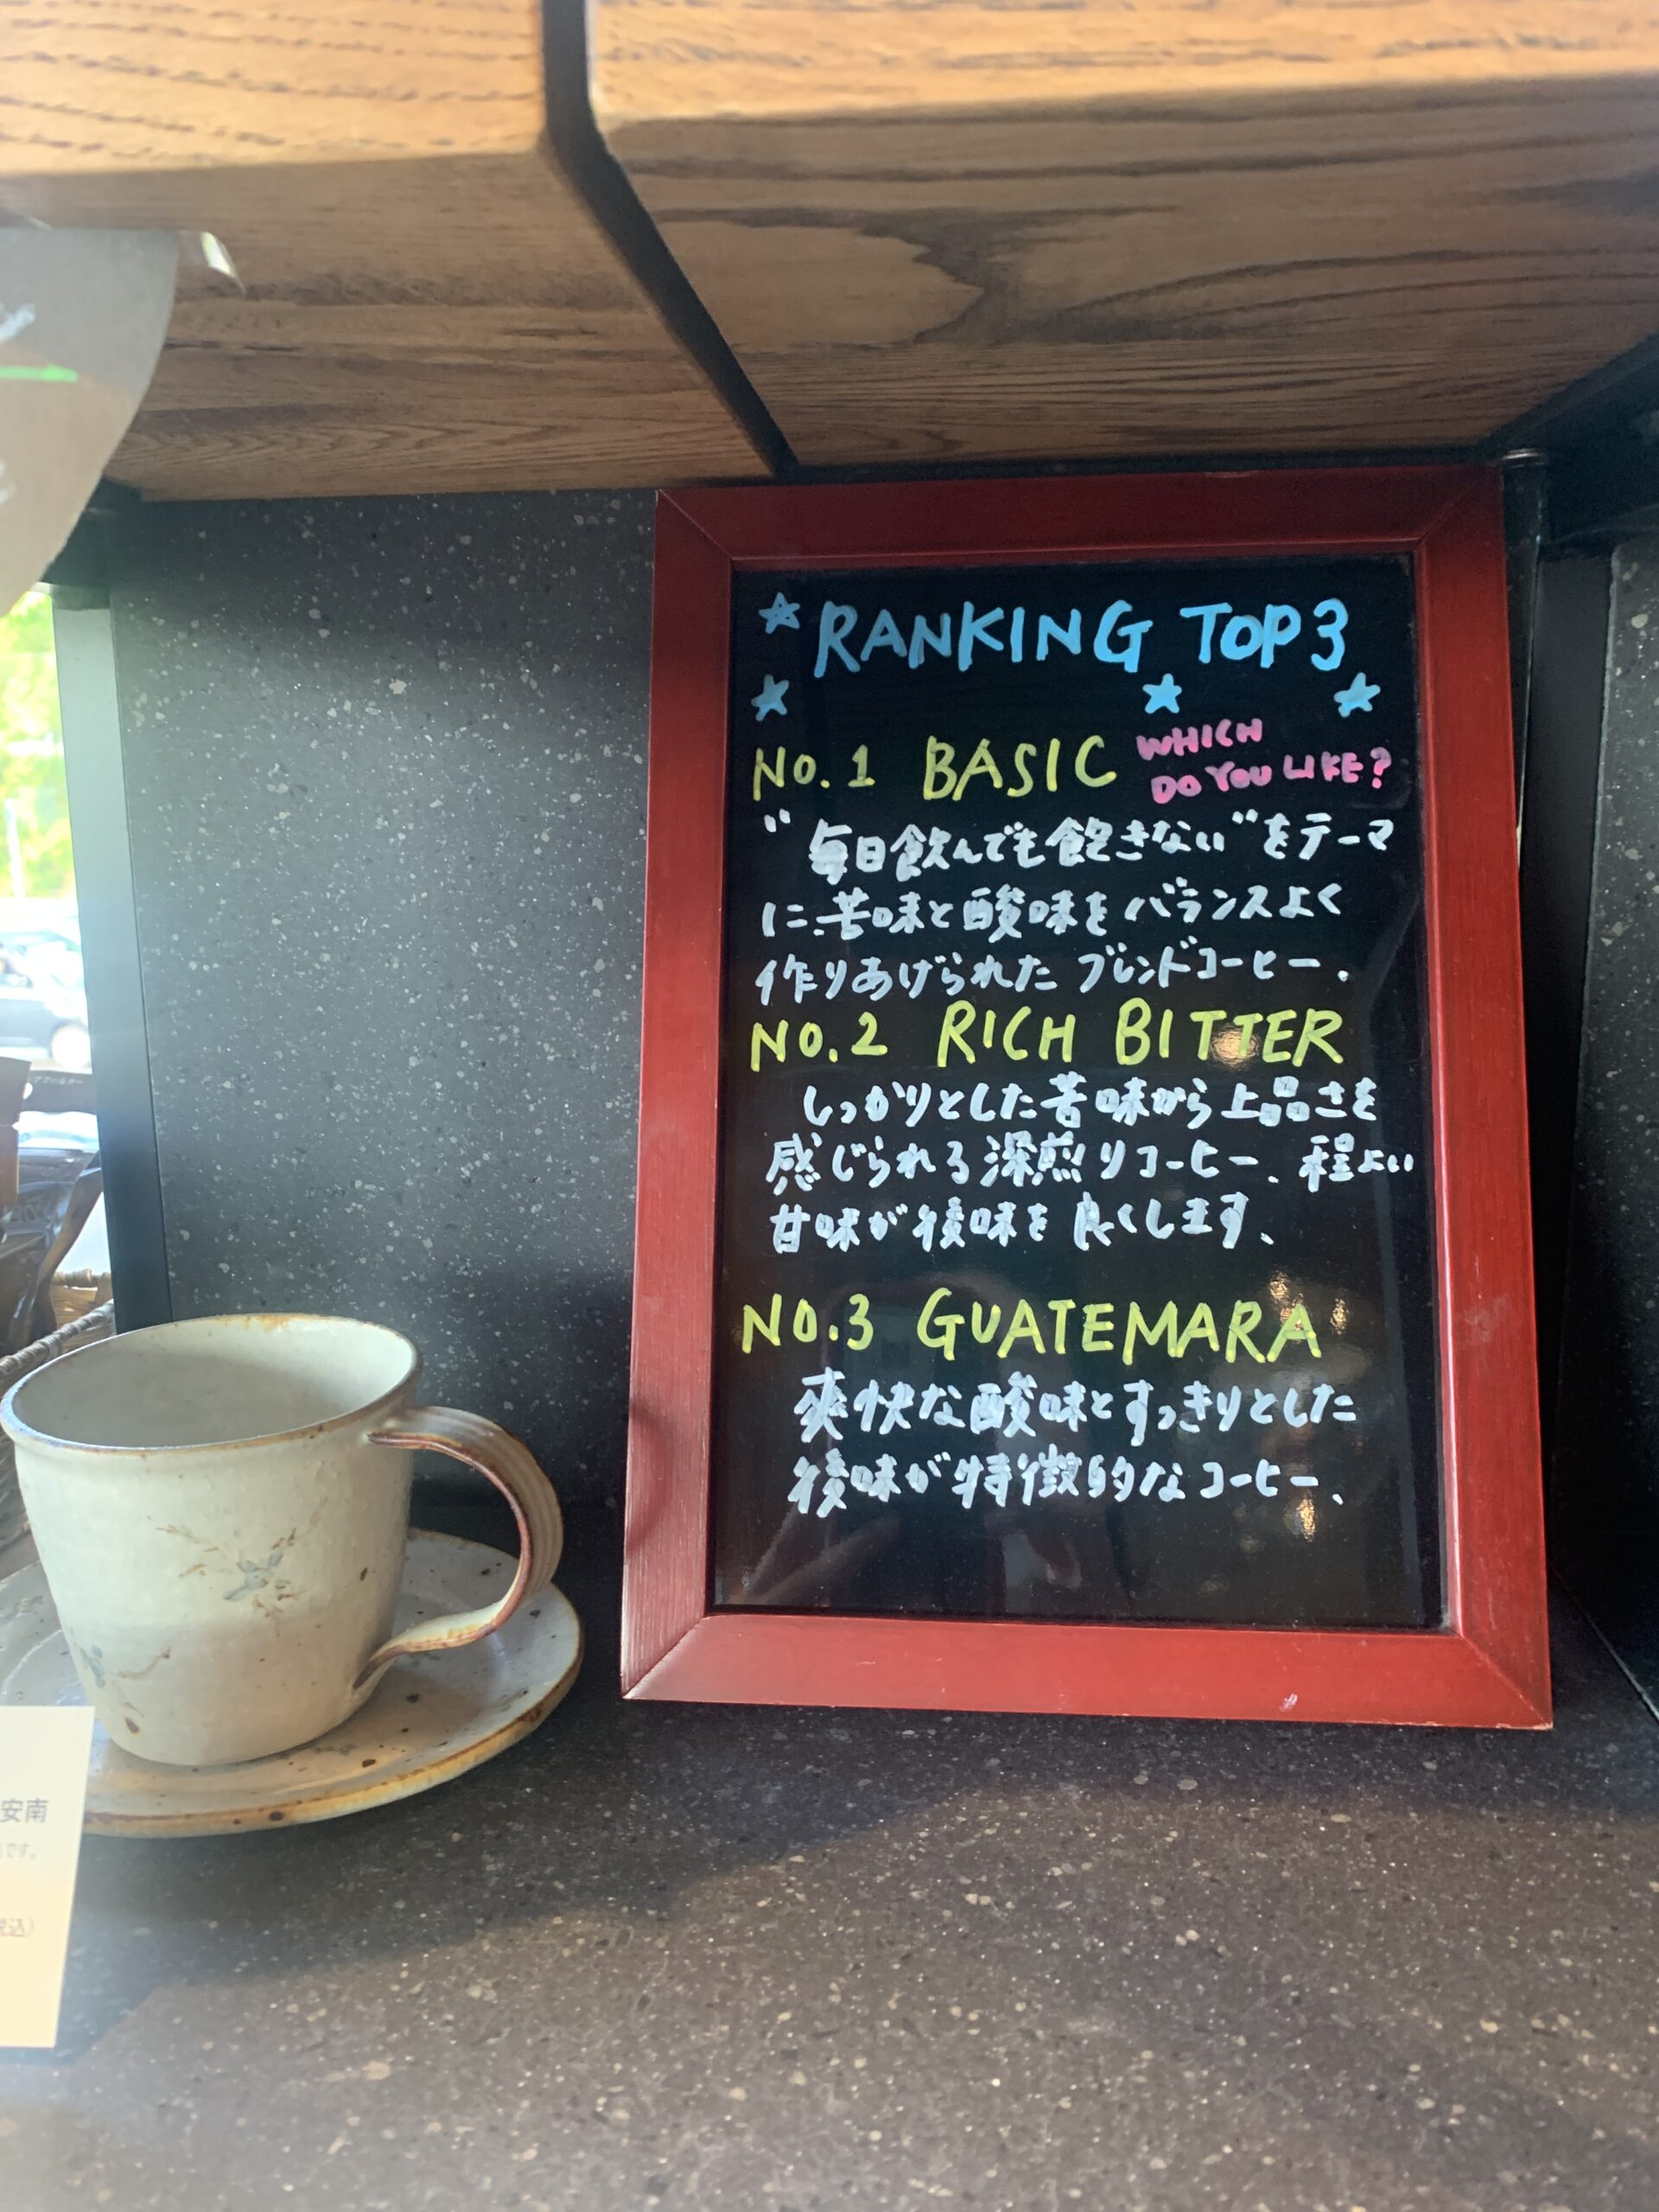 ロースタリーカフェ ノーザンエイトコーヒー｜神戸市北区鹿の子台